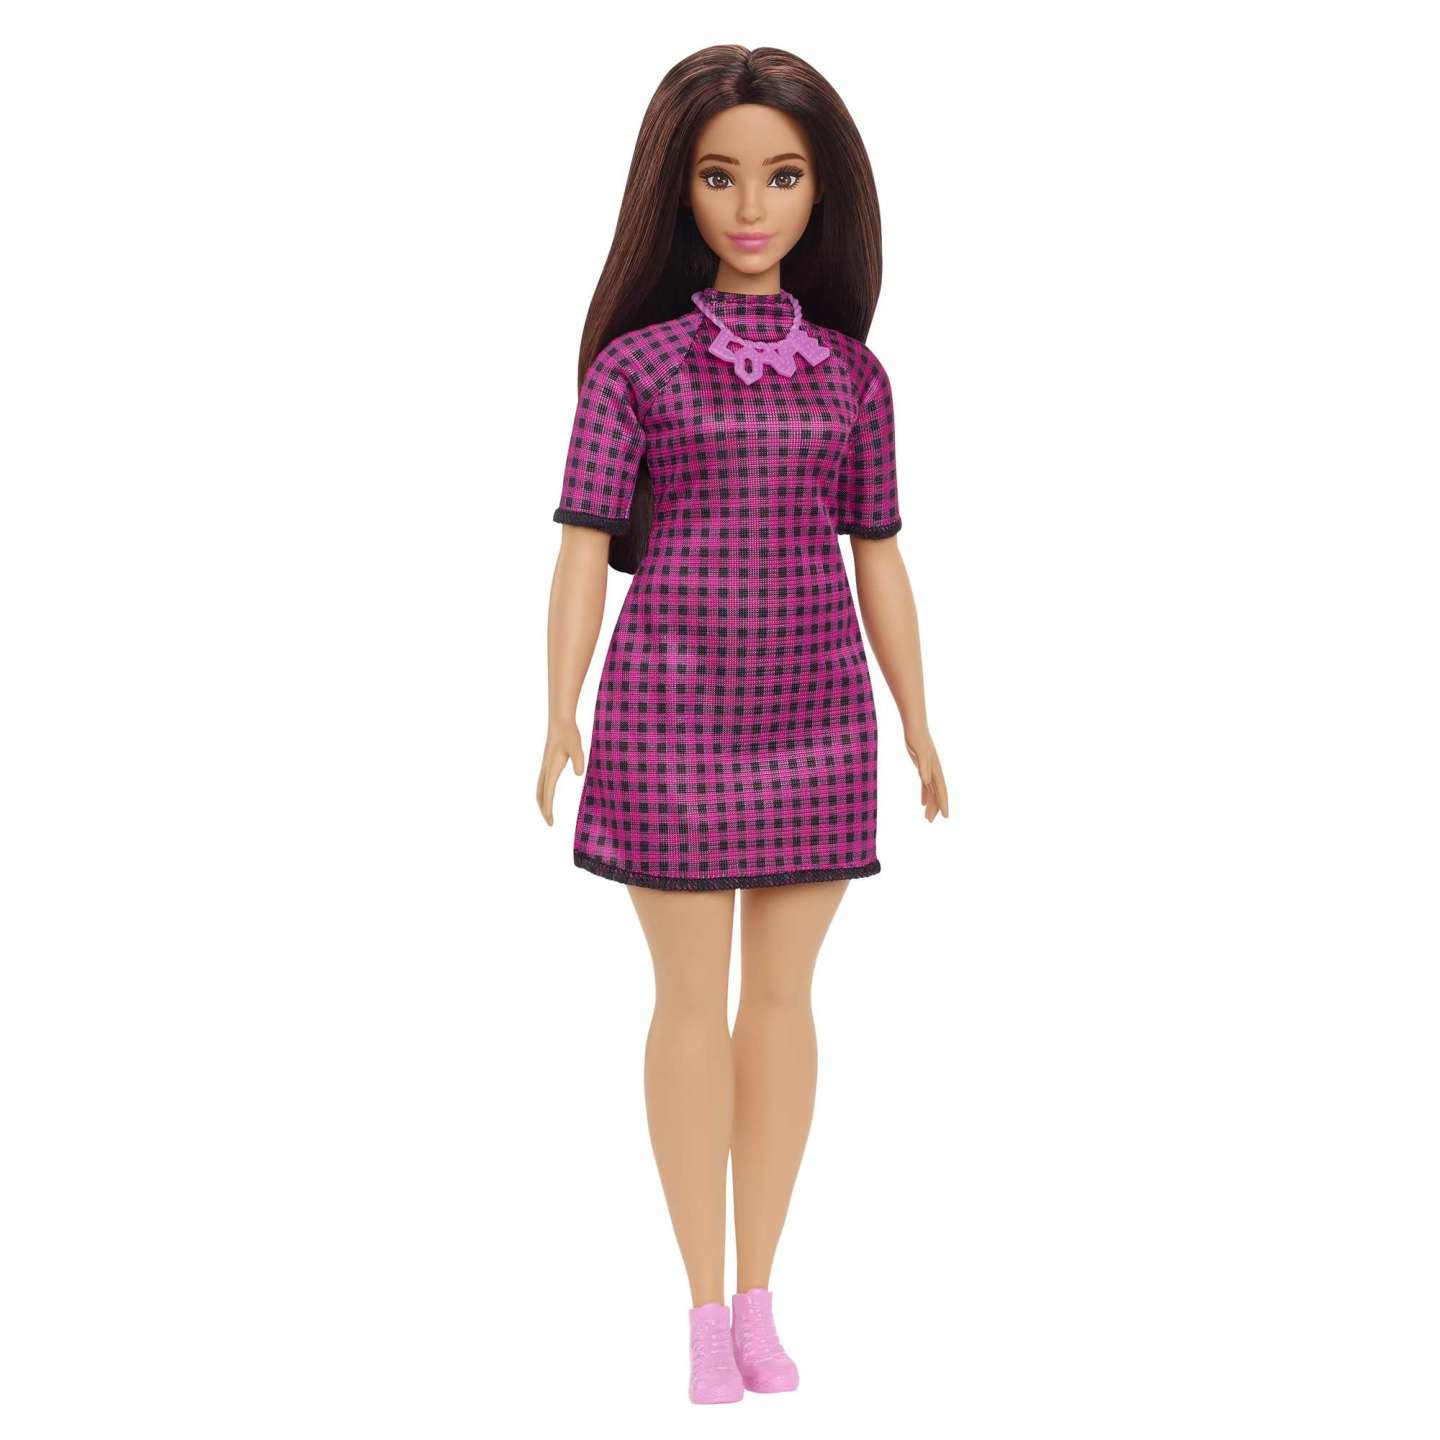 Mattel - Barbie Fashionistas Puppe Im Pink-Schwarz-Karierten Kleid